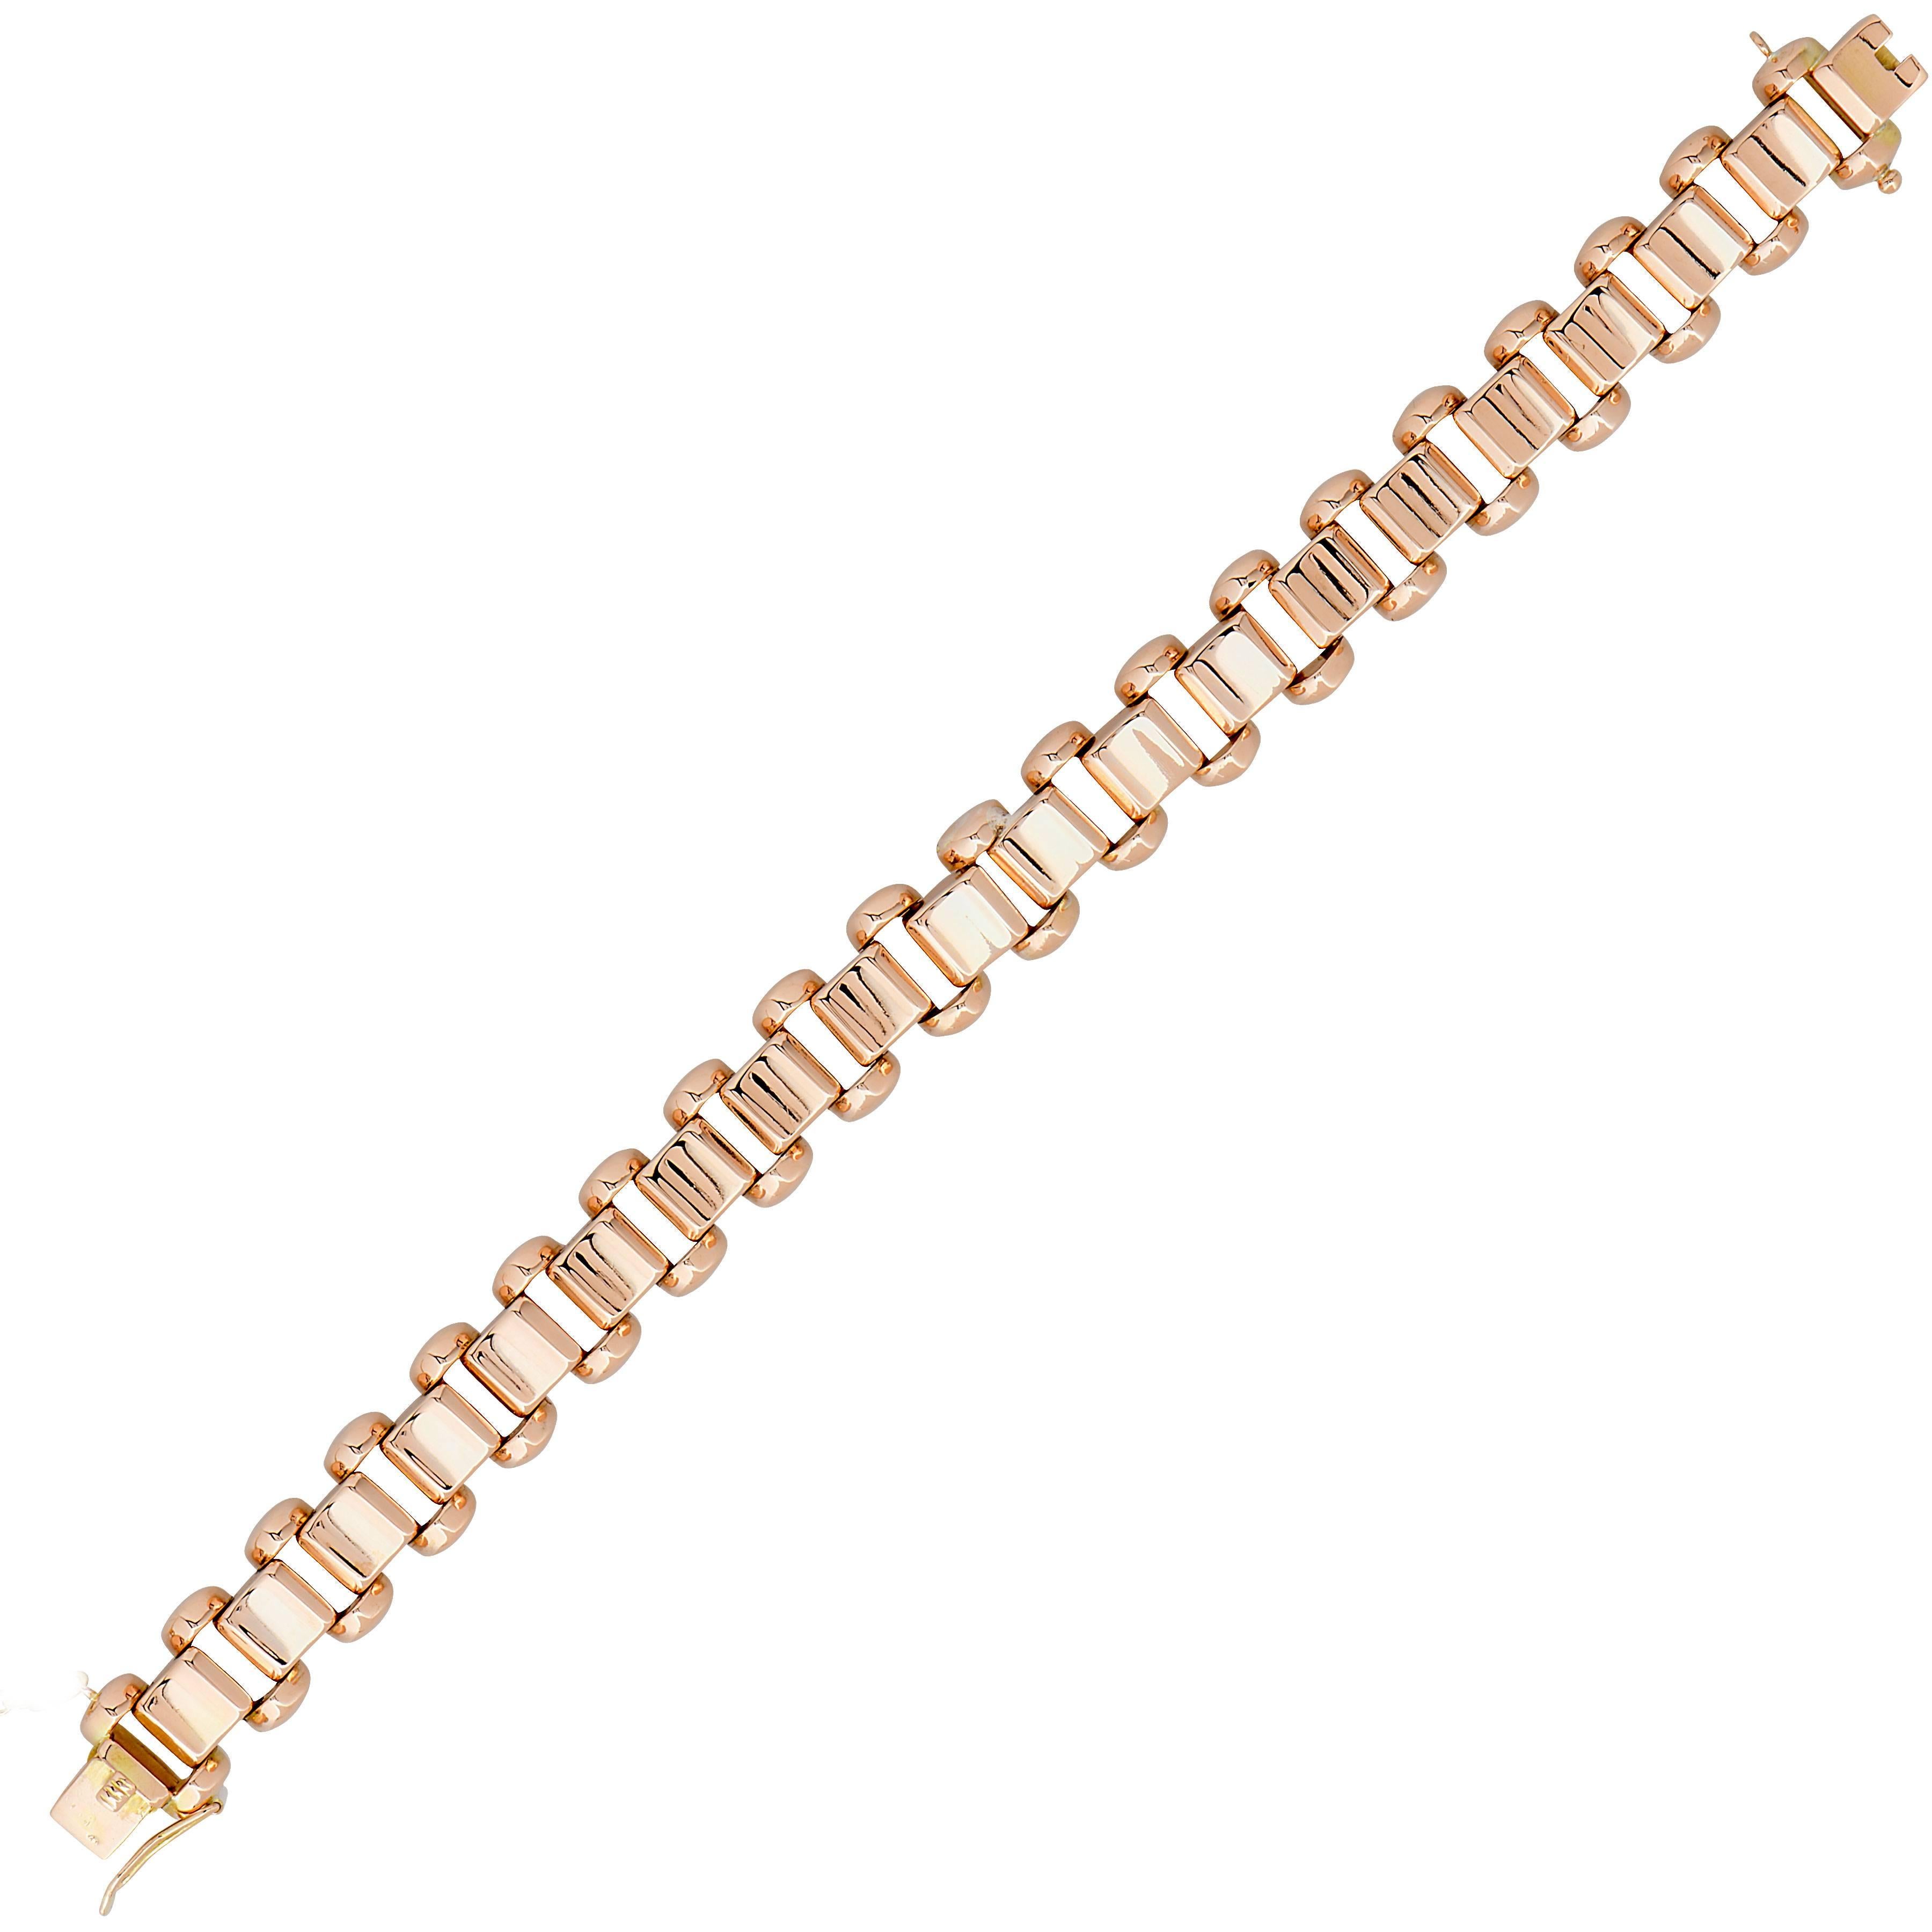 Retro 18 Karat Rose Gold Link Bracelet
Metal Type: 18 Karat Rose Gold
Metal Weight: 31 Grams
Bracelet Length: 7 1/4 inches
